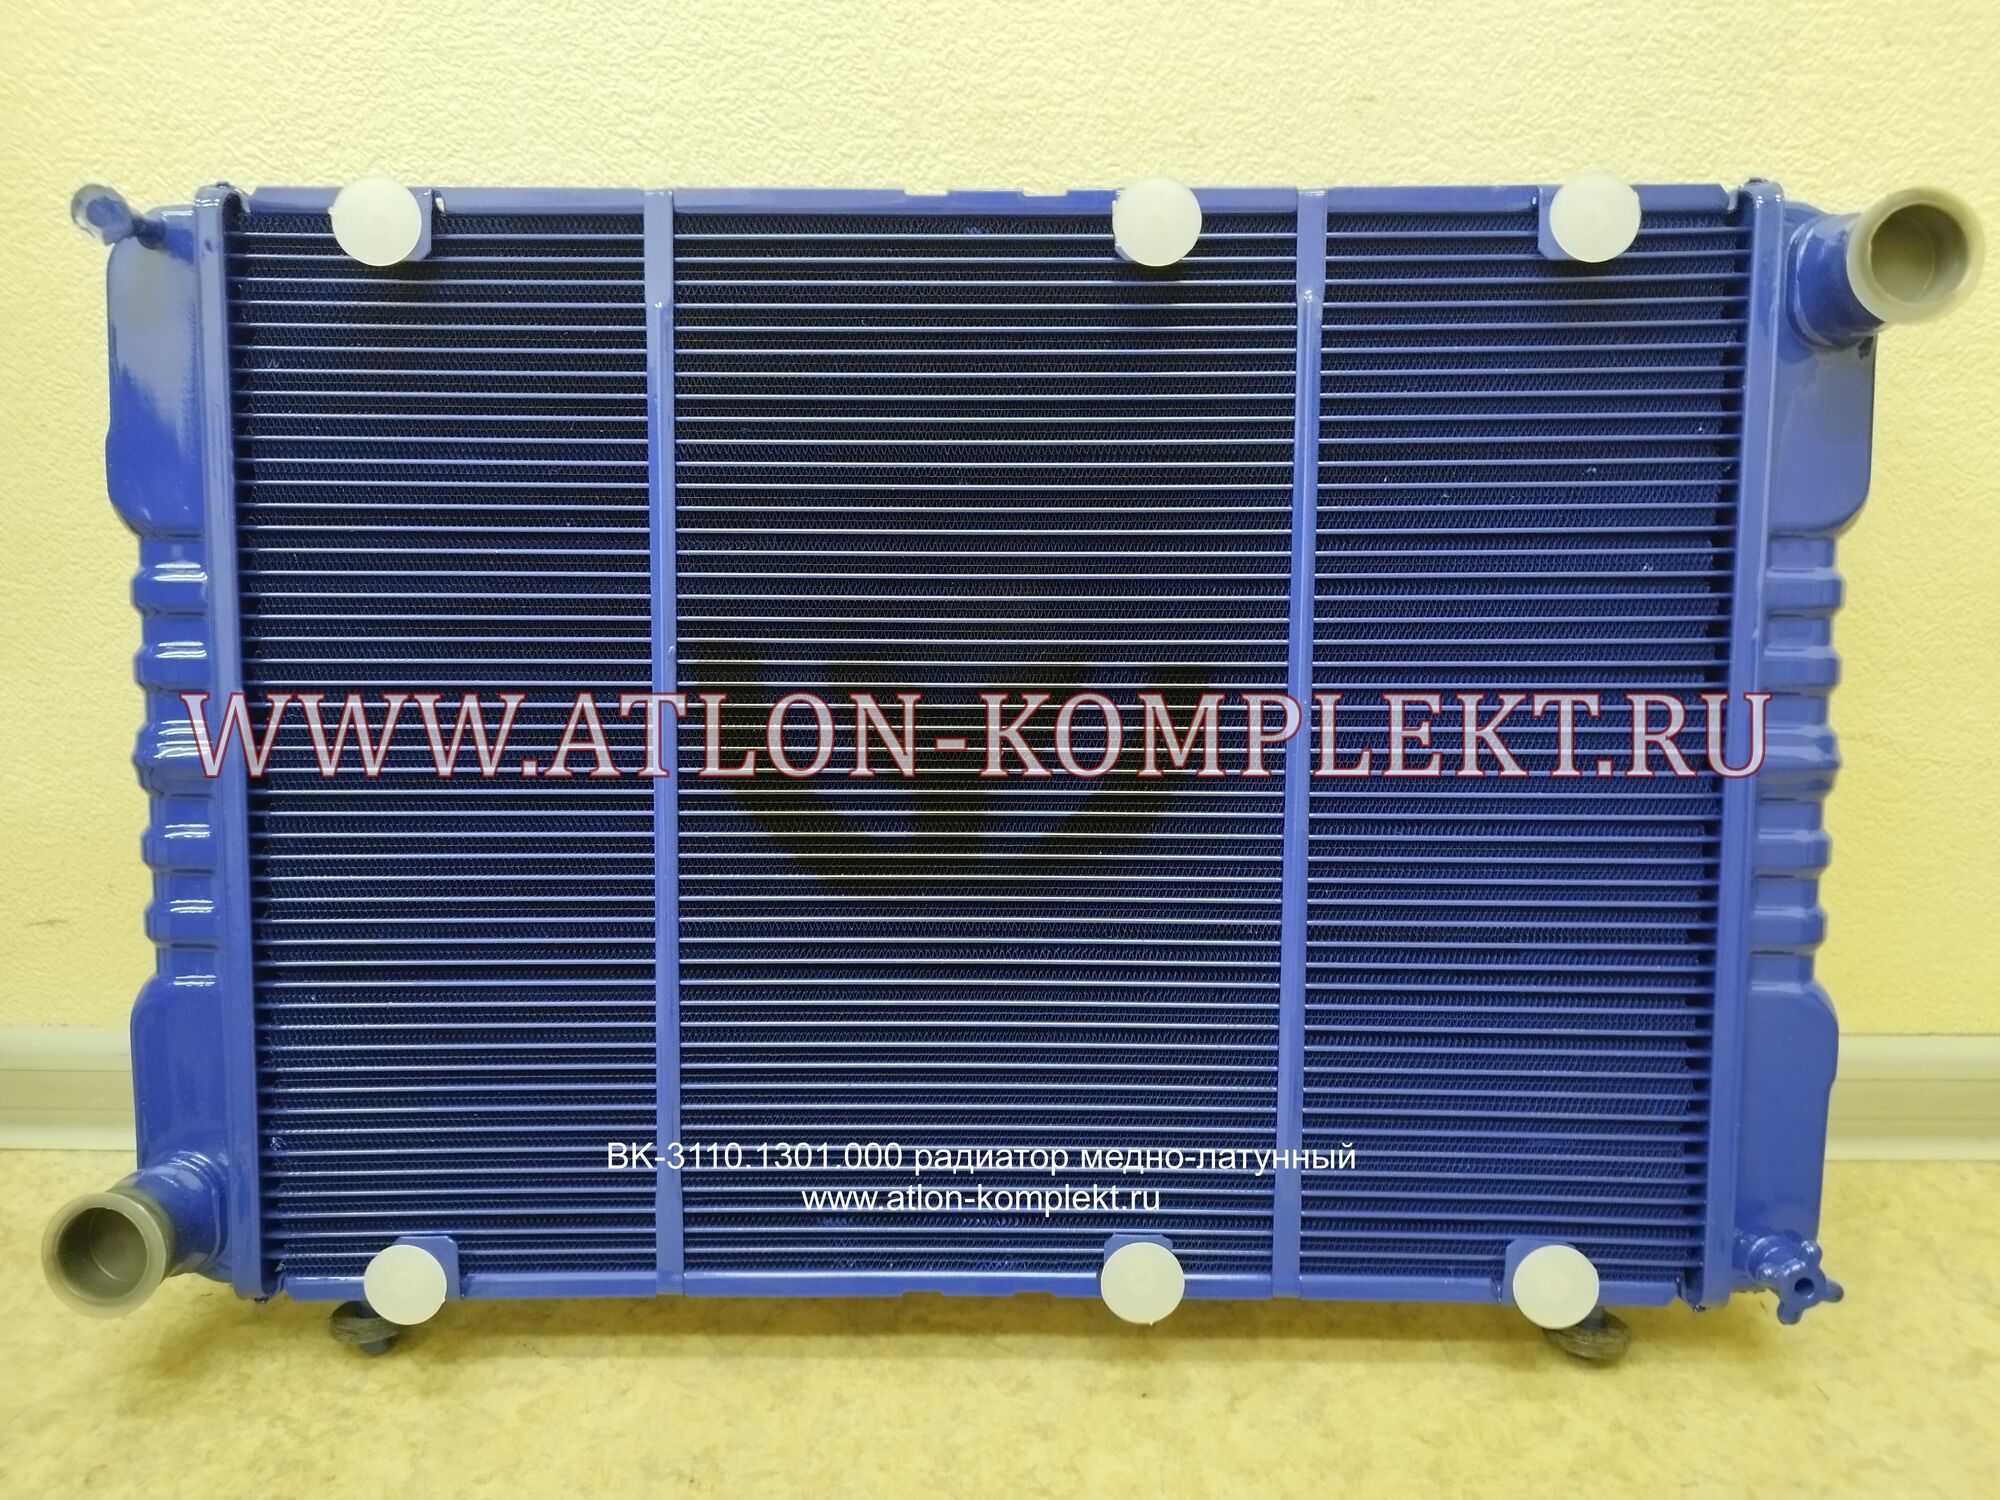 Радиатор Волга ГАЗ-3110 повышенной эффективности ВК-3110.1301.000 2-х рядный